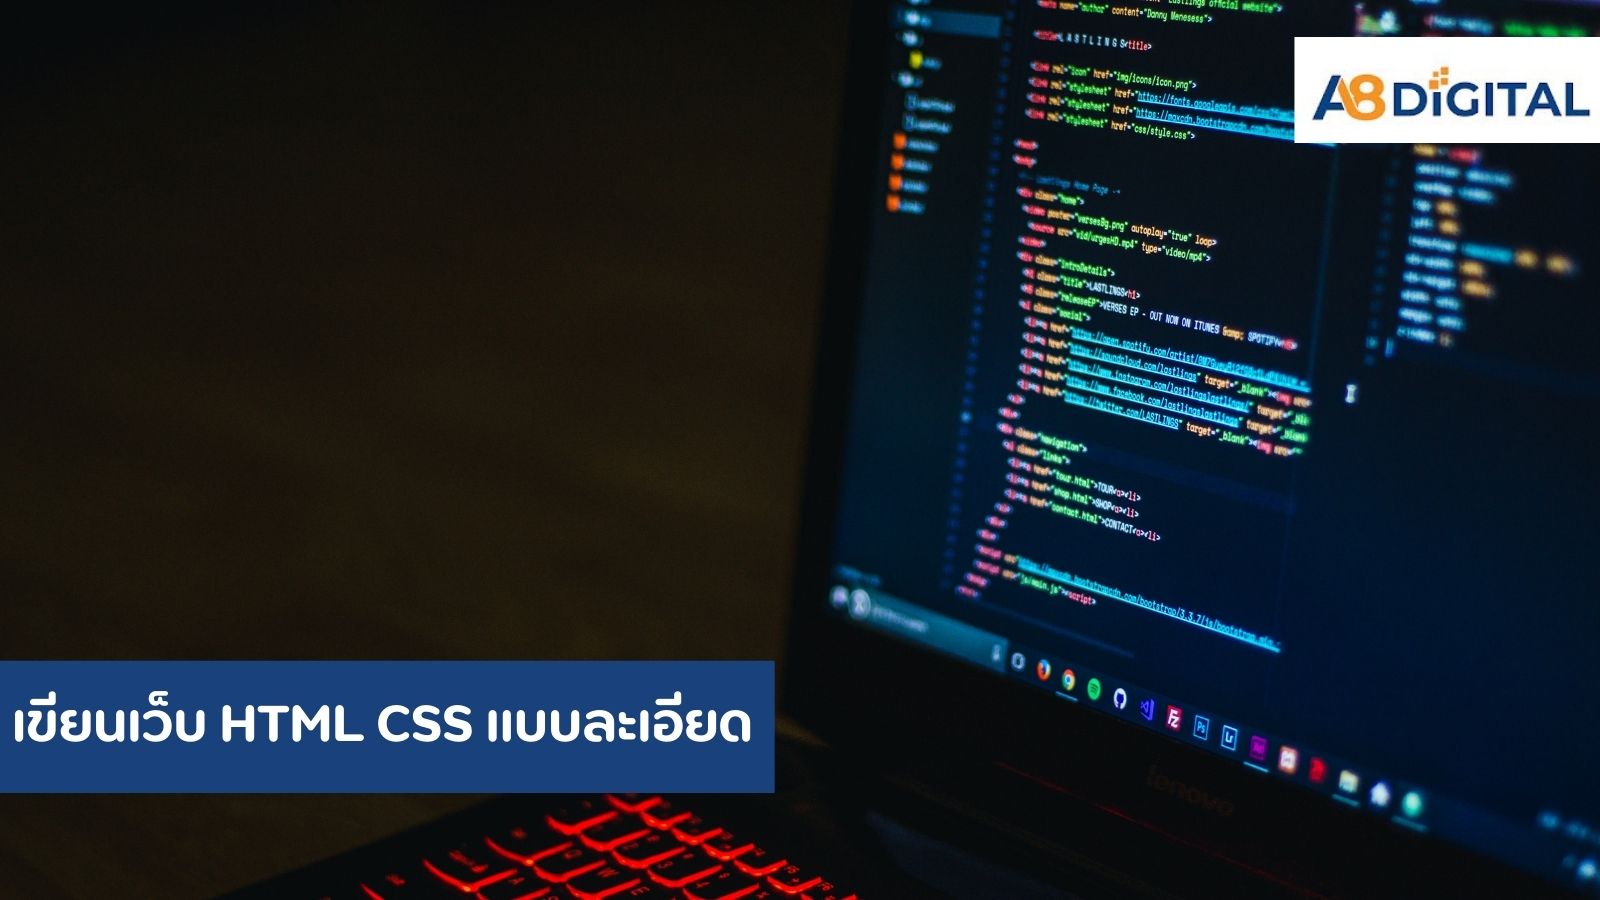 เขียนเว็บ HTML CSS การเขียนเว็บไซต์นั้นประกอบไปด้วยสององค์ประกอบหลักๆ คือ โครงสร้างเนื้อหา (Structure) และ รูปแบบการแสดง